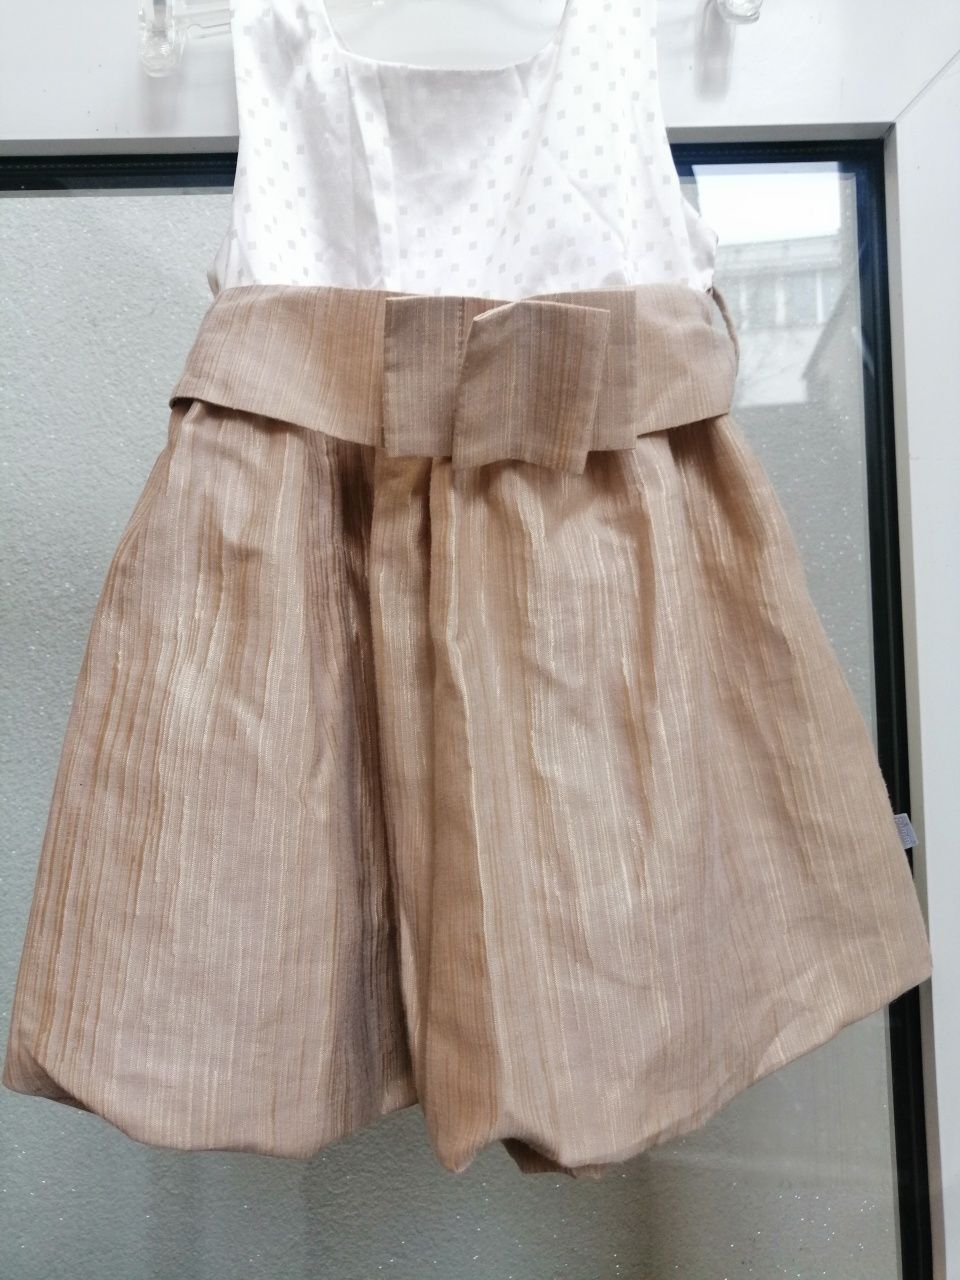 Sukienka dla dziewczynki roz. 98,szer.pod paszkami 27cm.dl.50cm.